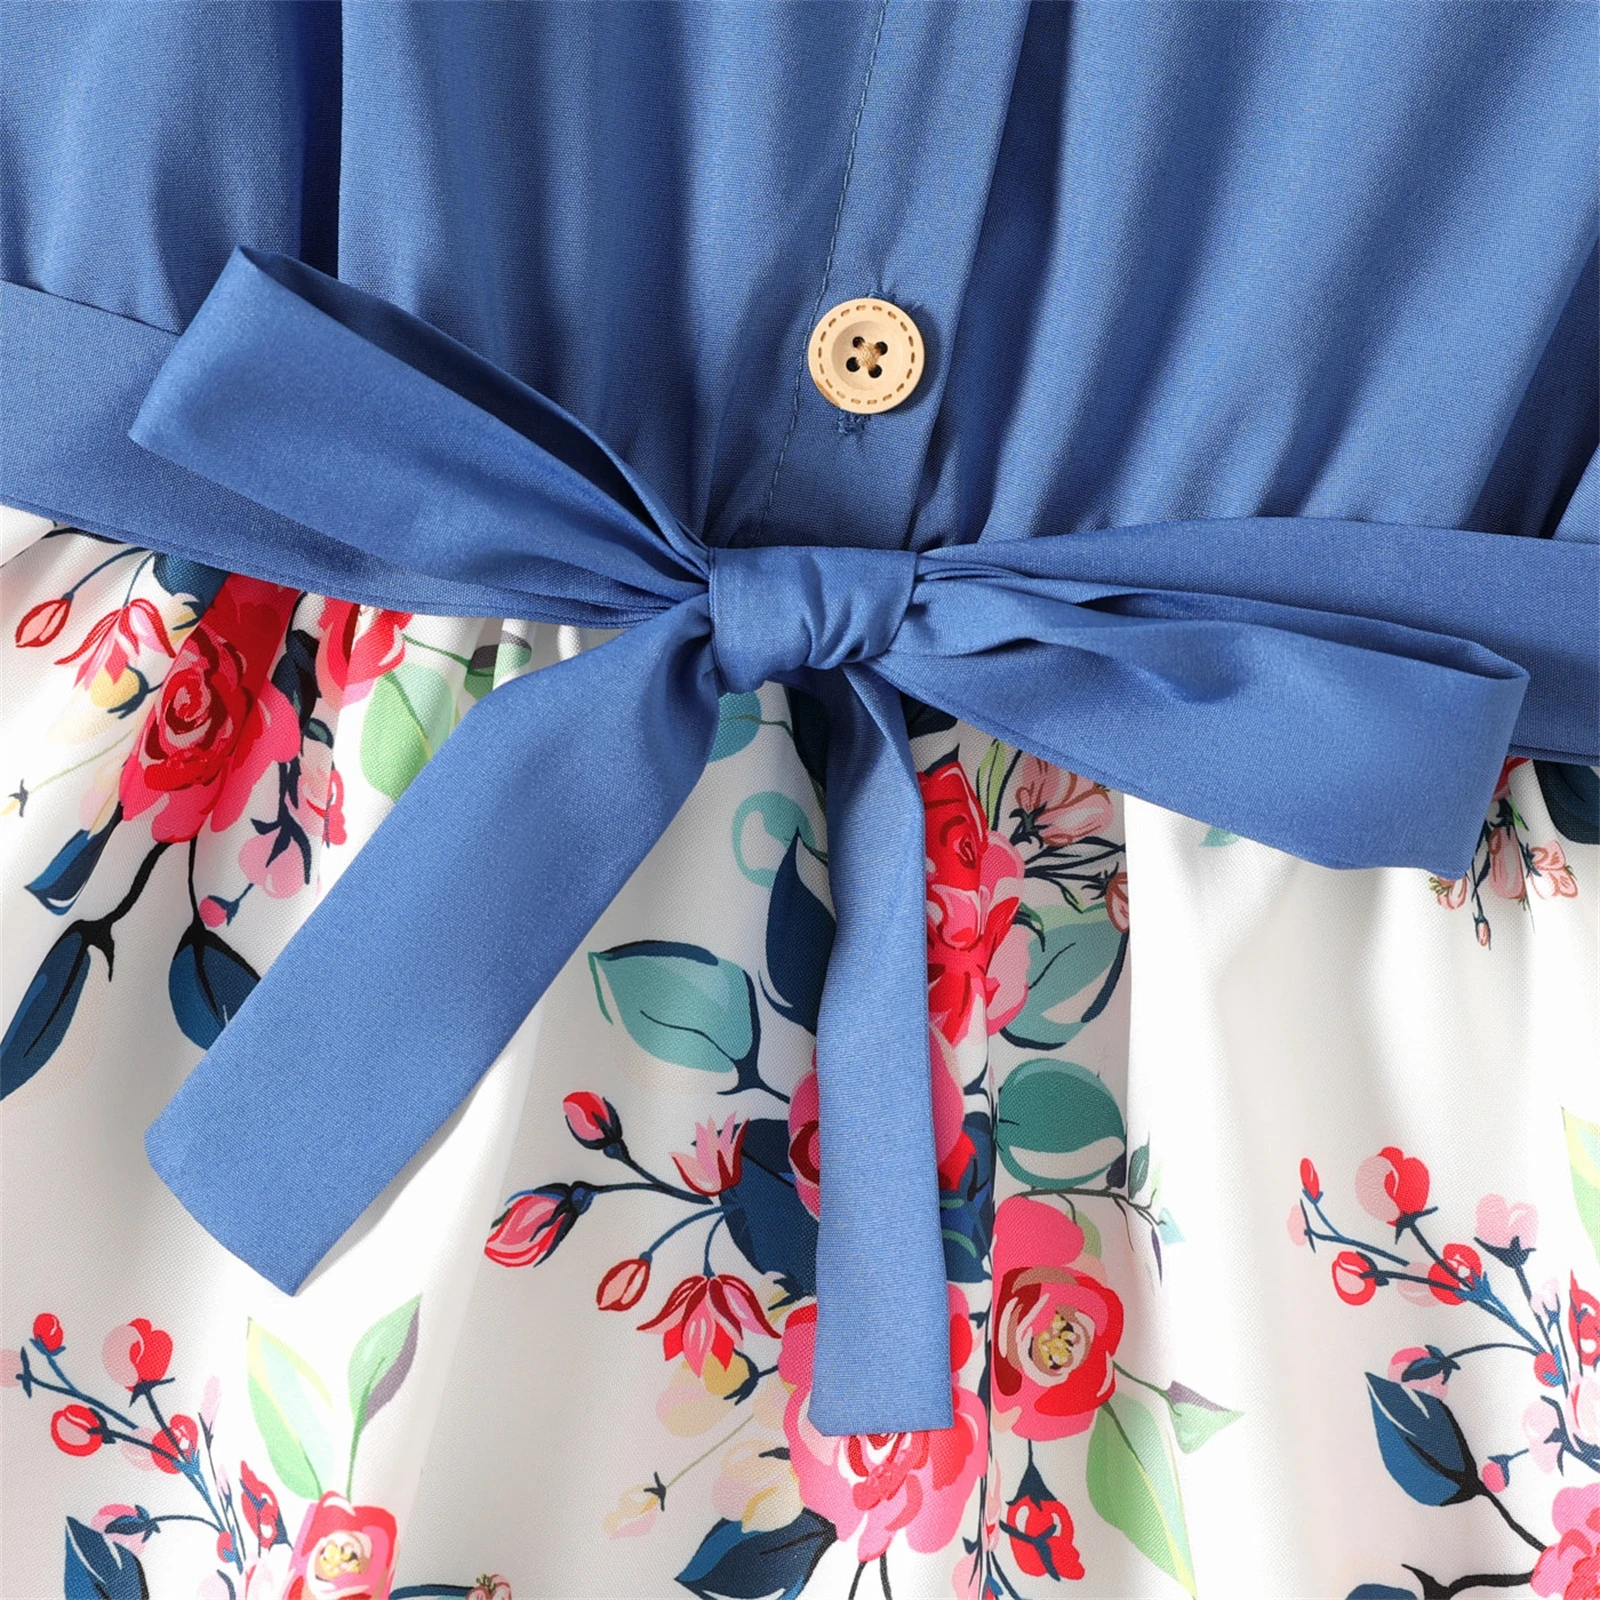 PatPat Girl Kids Elegant Party Dress: Ruffled Floral Print Splice Belted Flutter-Sleeve Dress